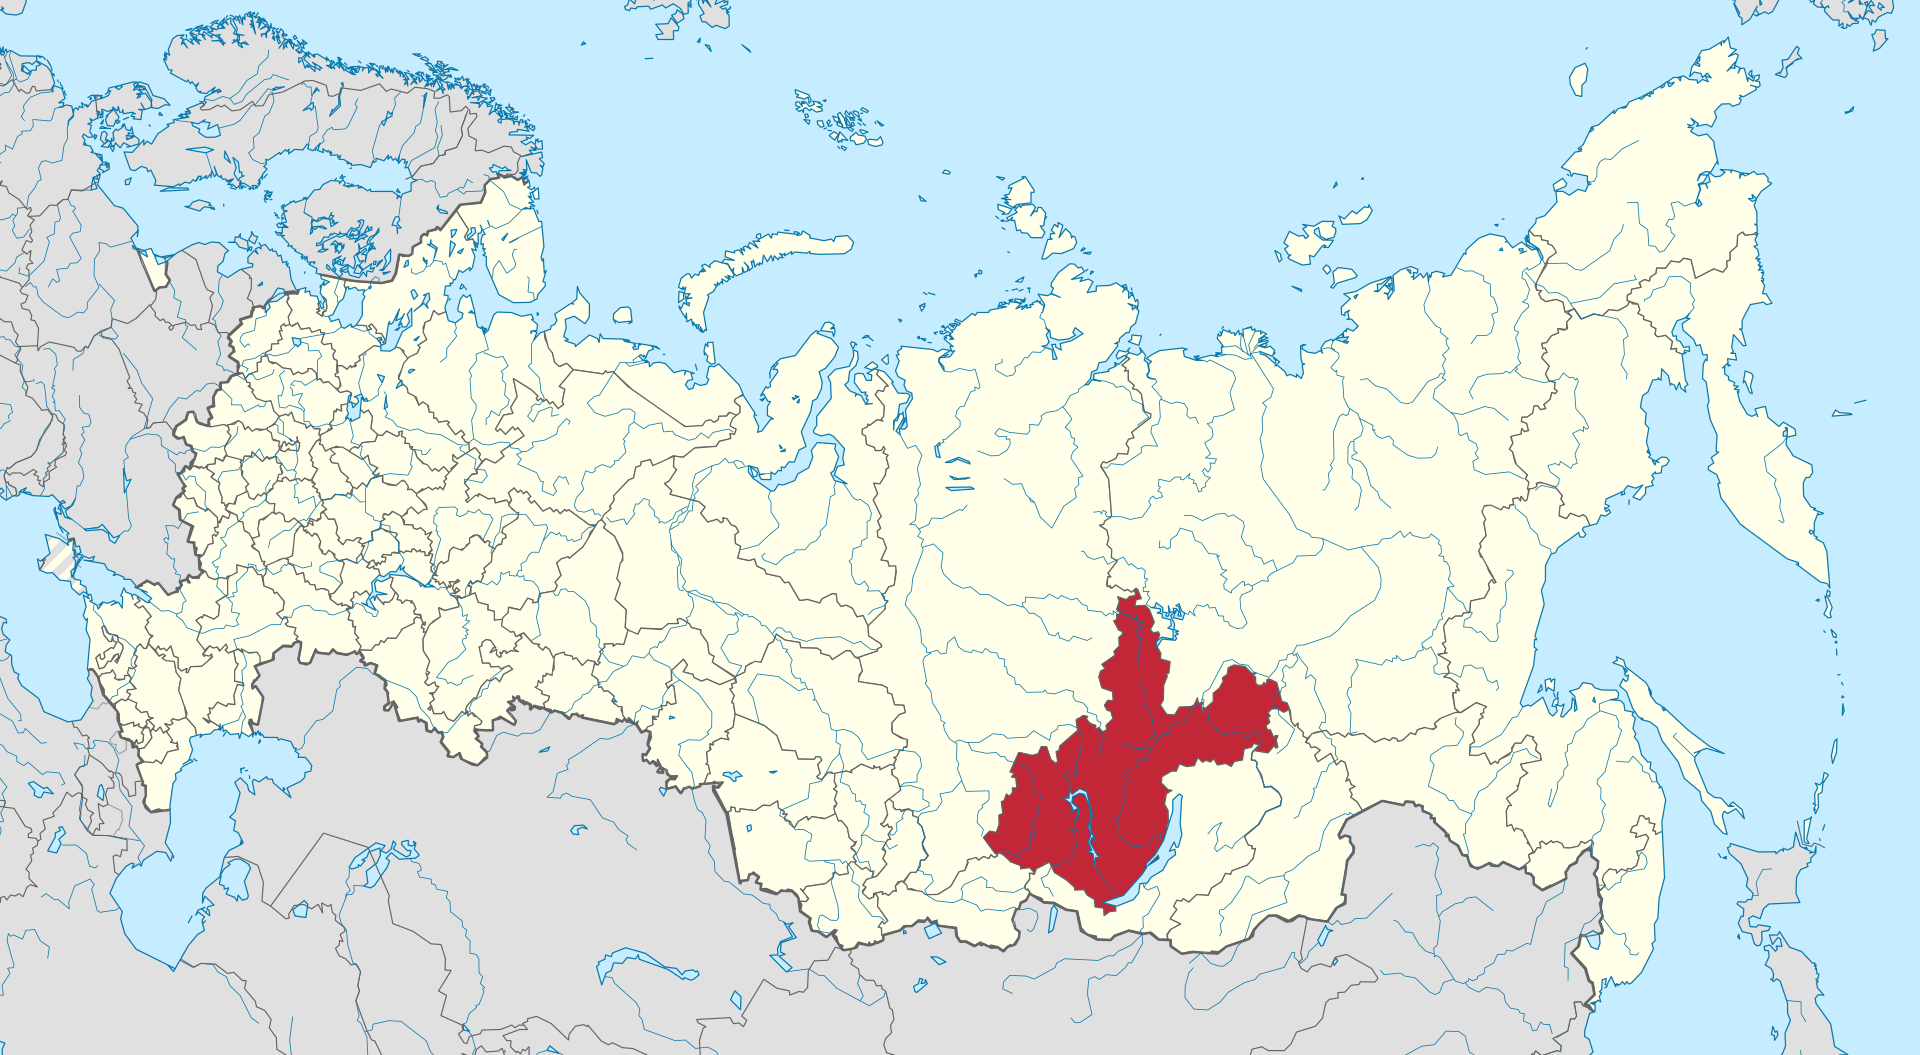 Karta Rusije s Irkutskom oblašću osjenčanom crvenom bojom.